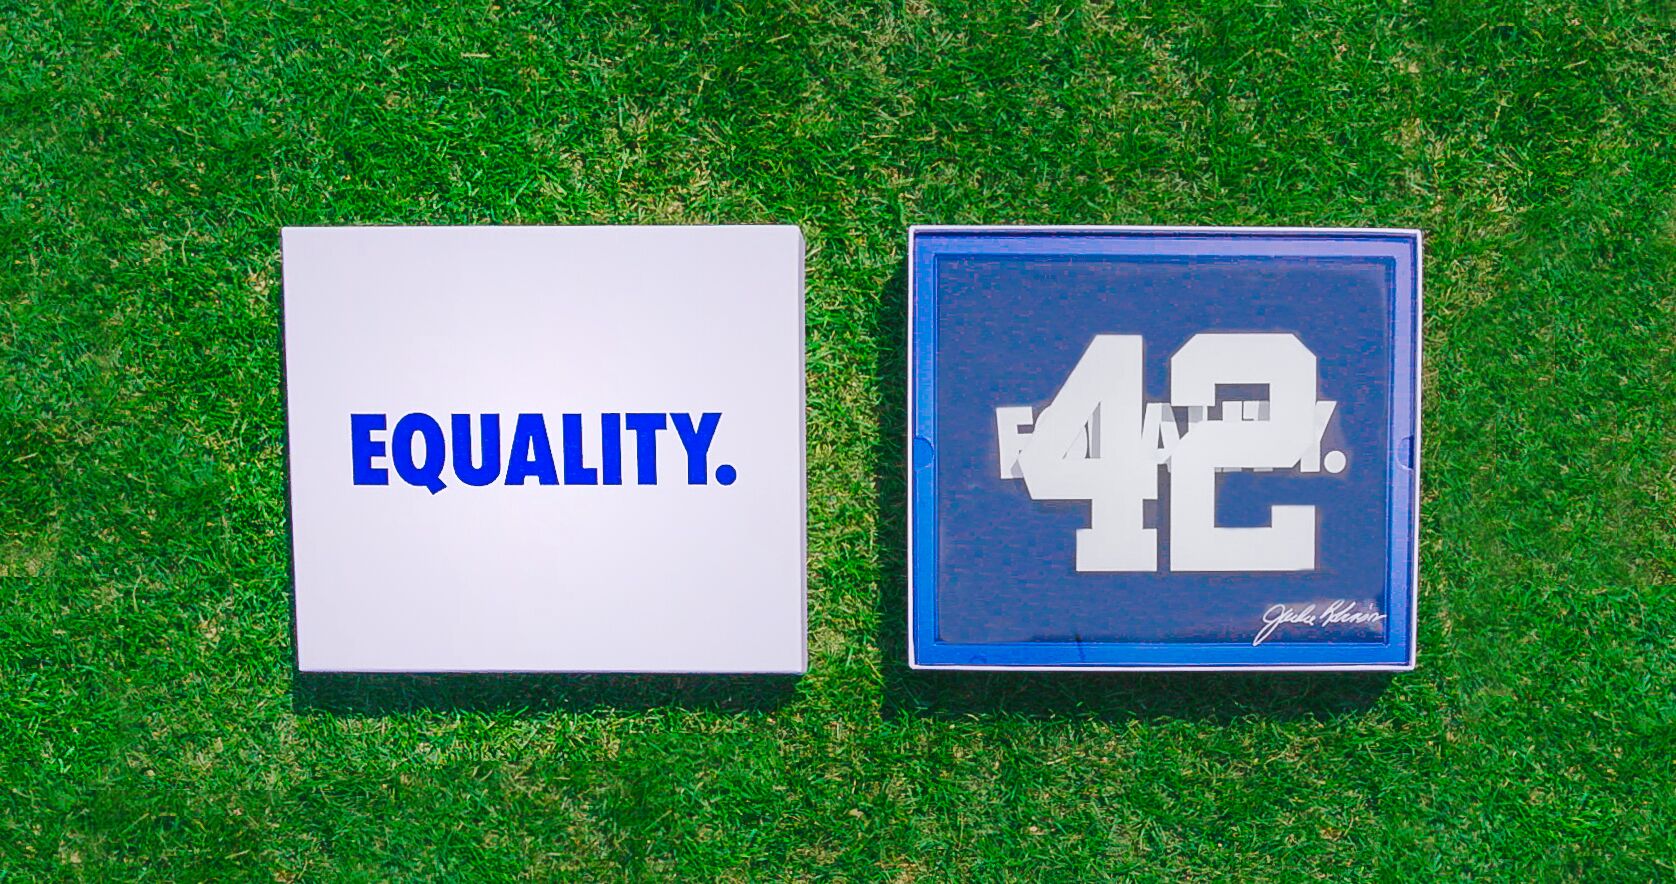 Nike Equality 42 jackie robinson